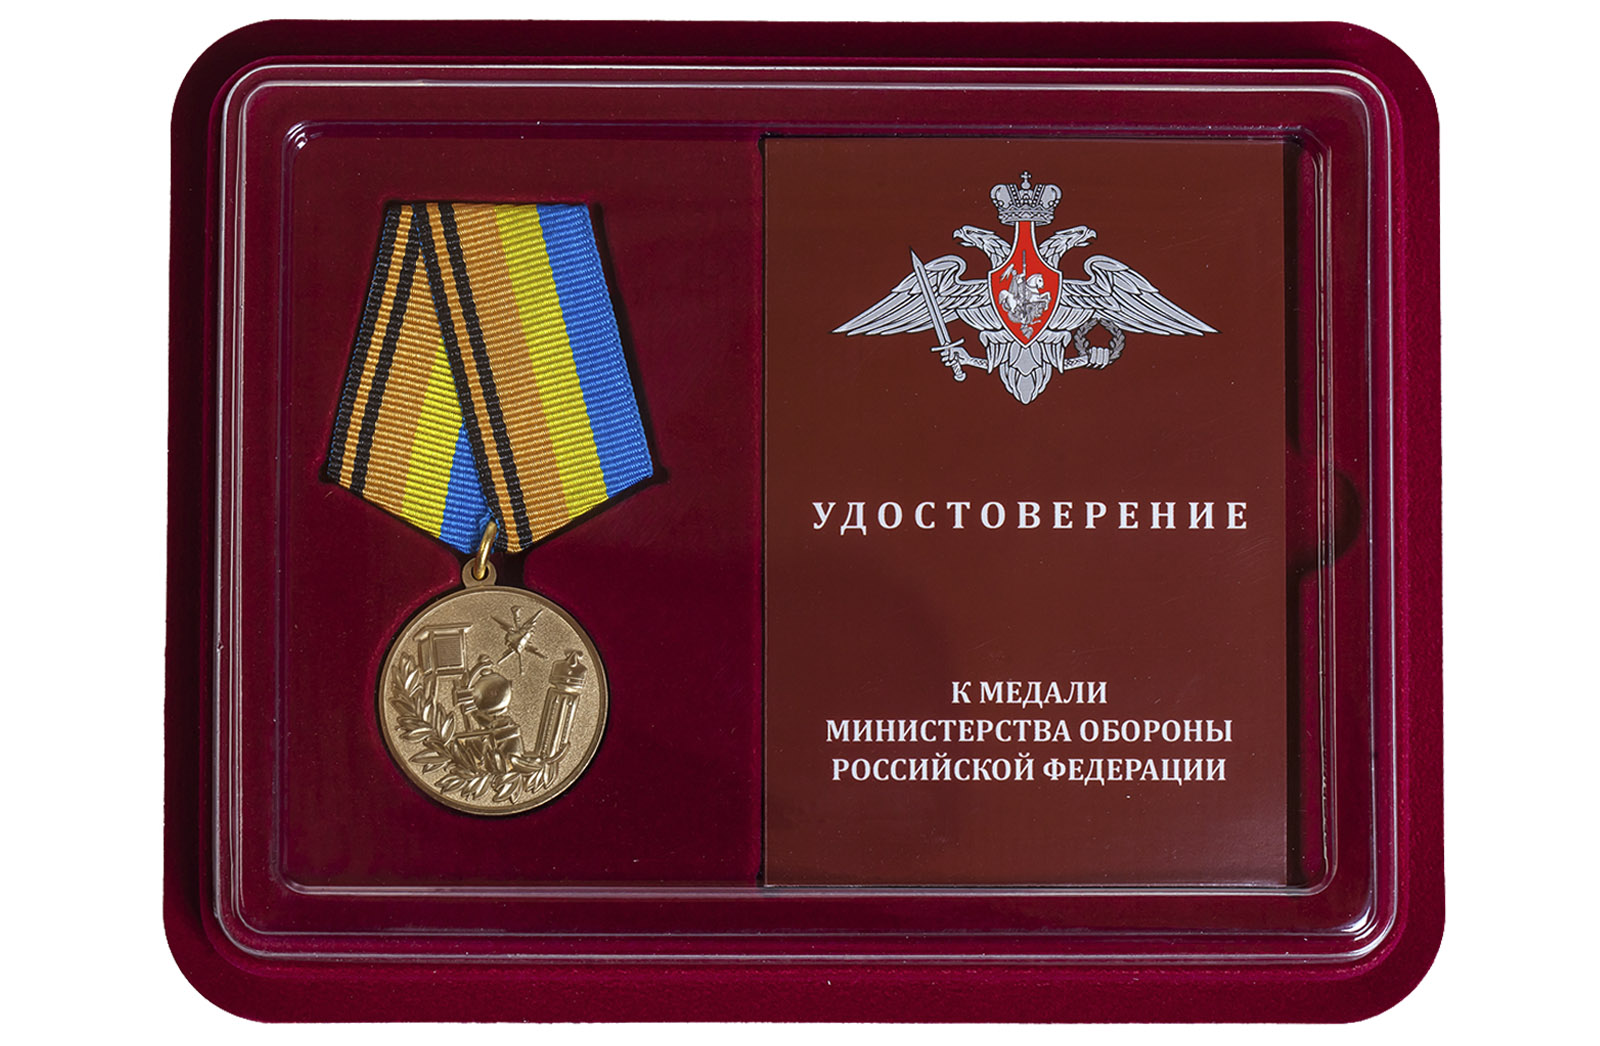 Медаль МО РФ "100 лет Гидрометеорологической службе" 